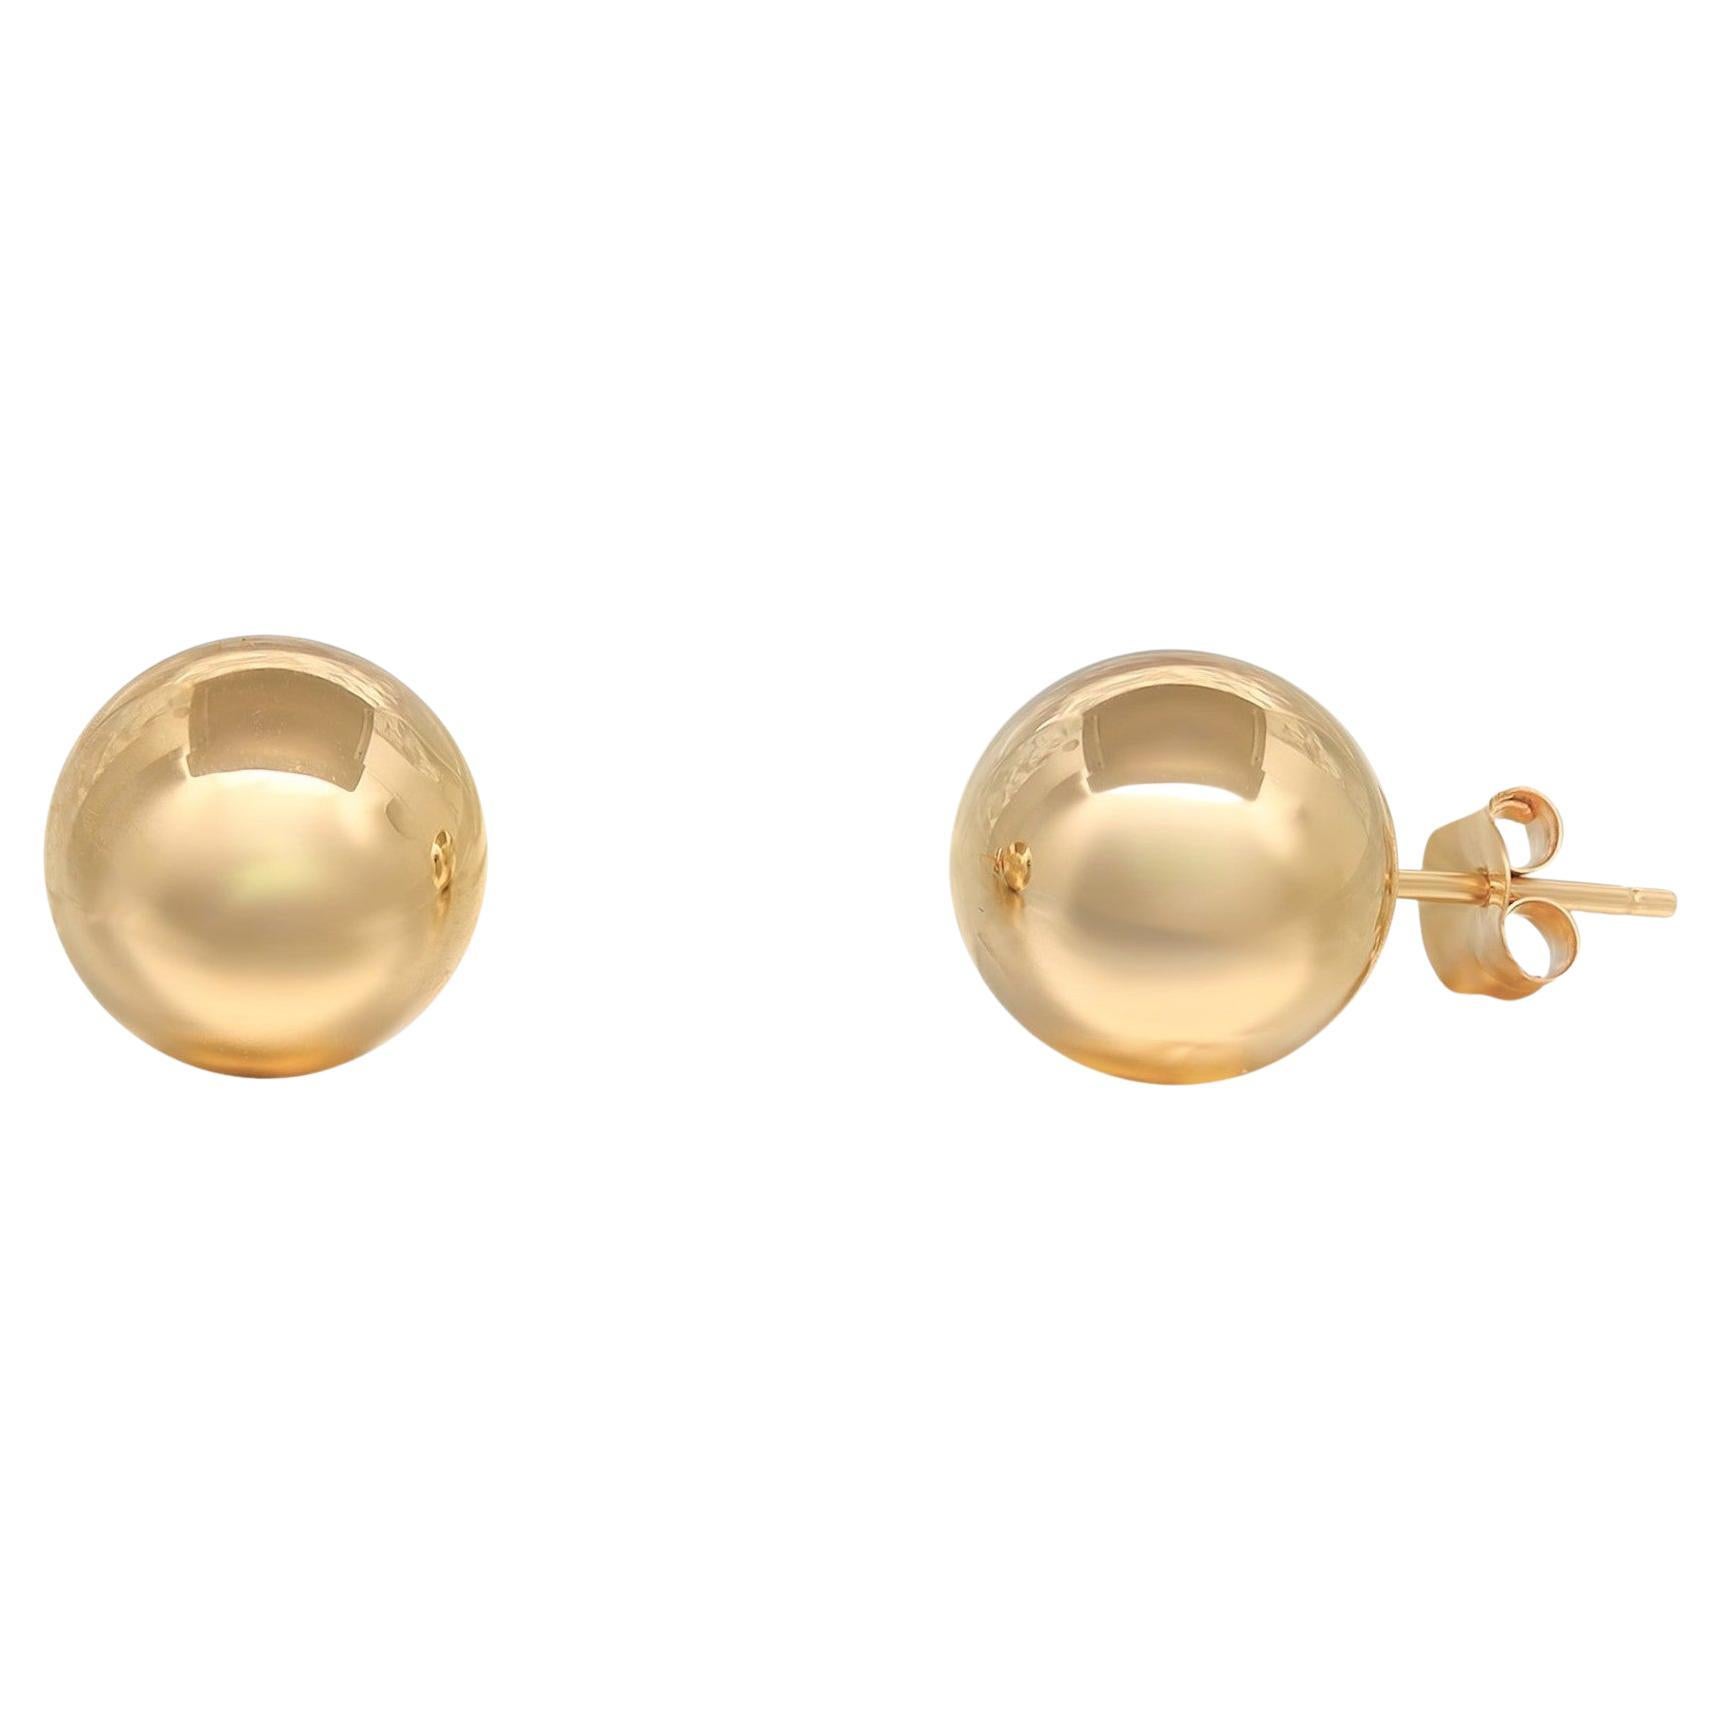 Gold Beaded Ball Earrings Stock Photo 1348182059 | Shutterstock